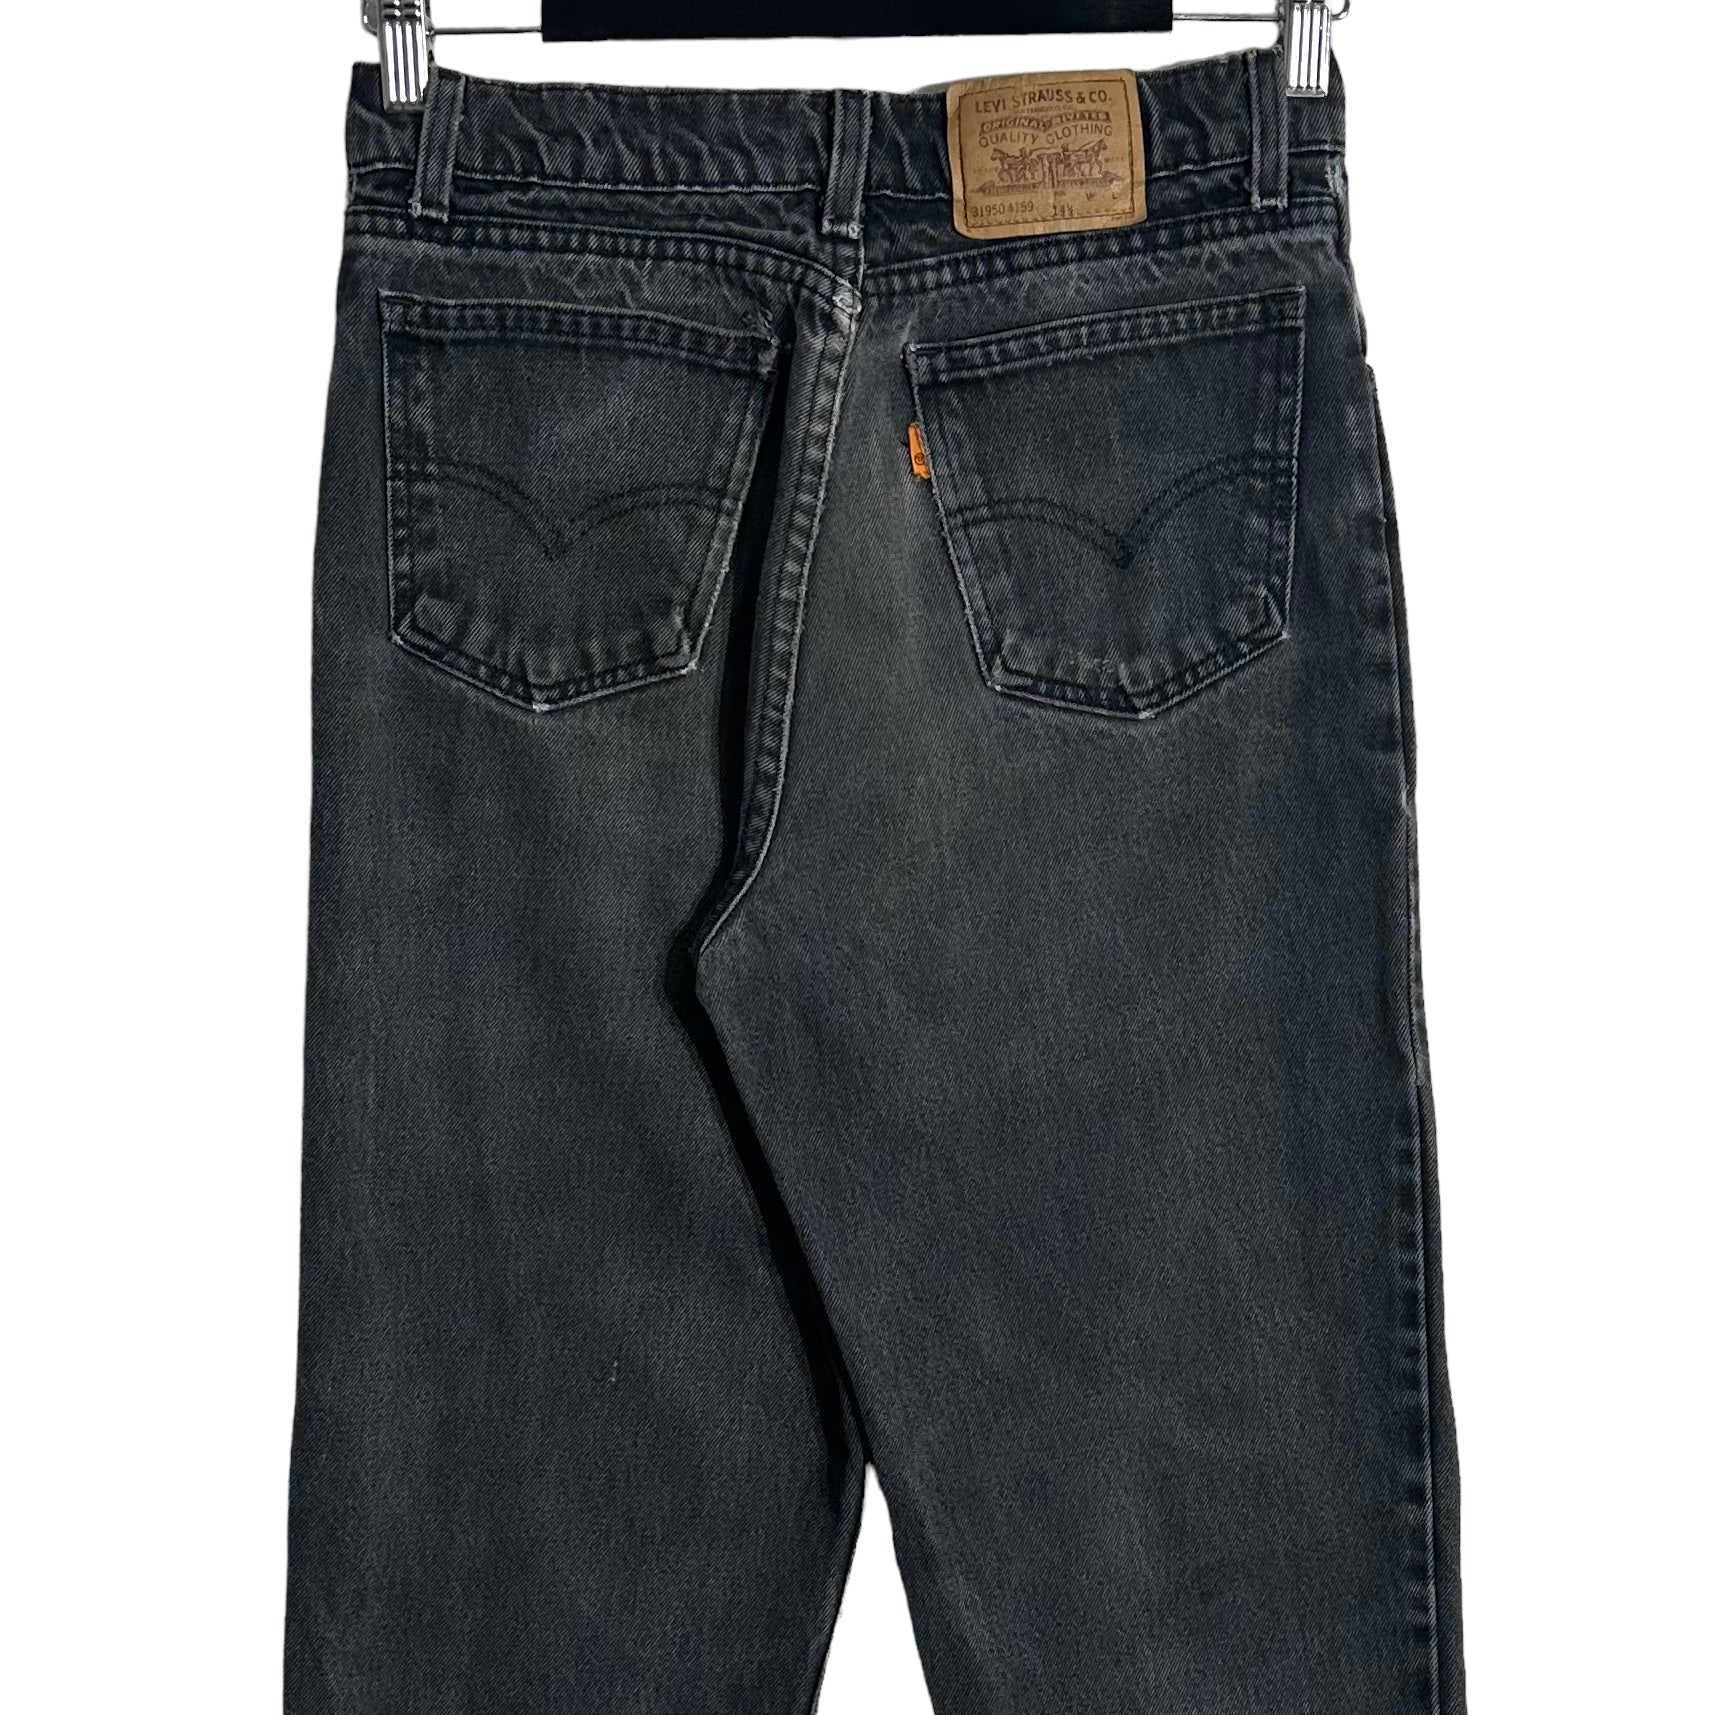 Vintage Levi's Orange Tab Tapered Leg Denim jeans